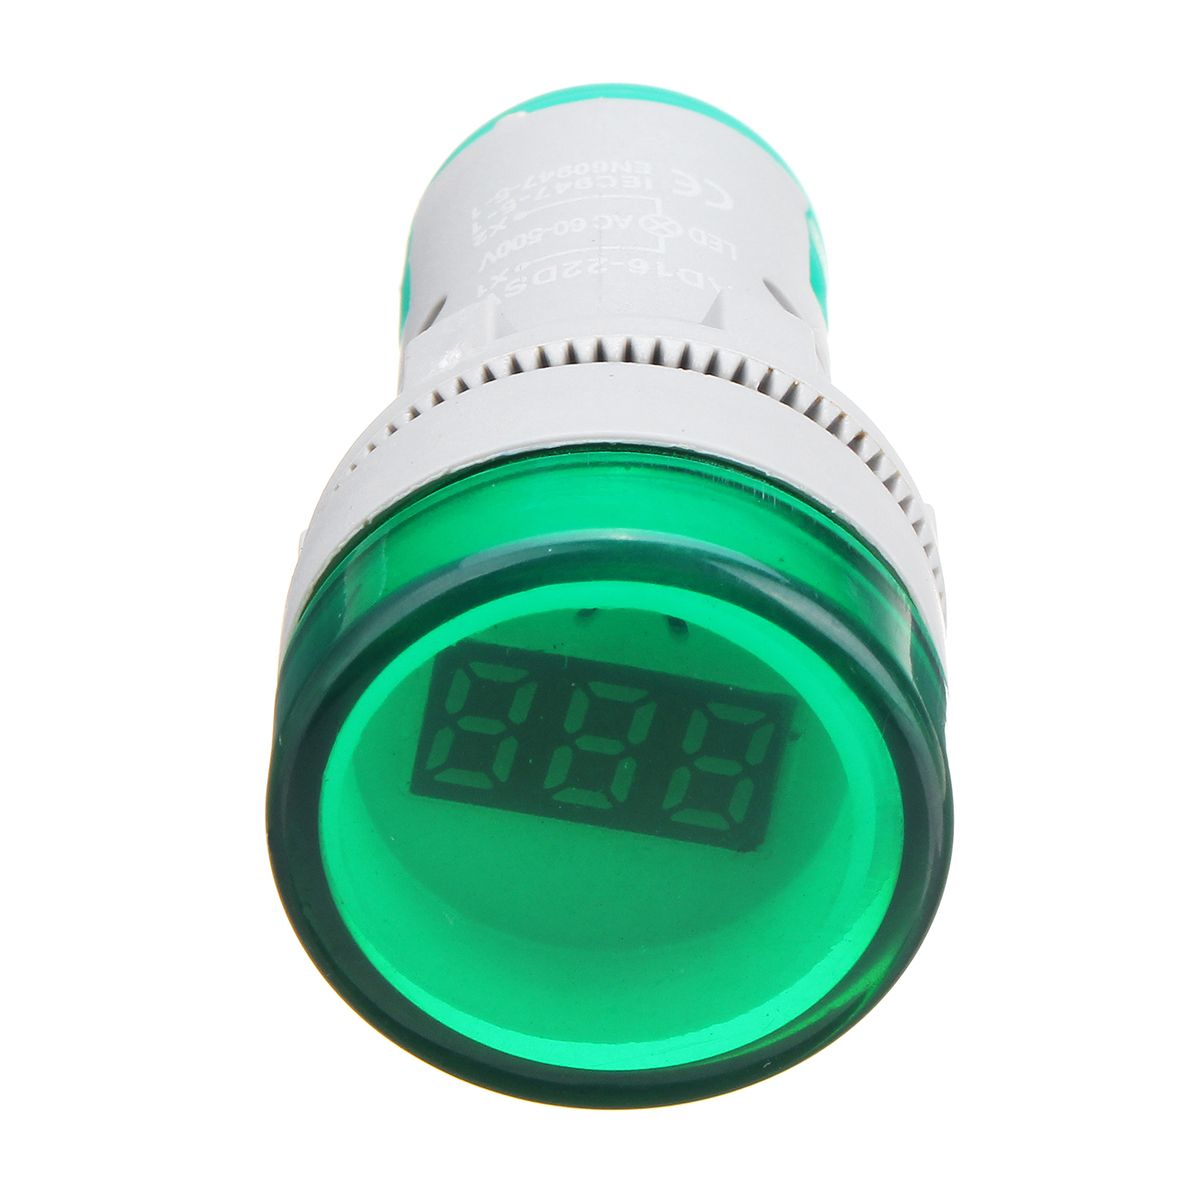 22mm-AC60-500V-LED-Digital-Display-Voltmeter-Voltage-Meter-Indicator-Light-1286274